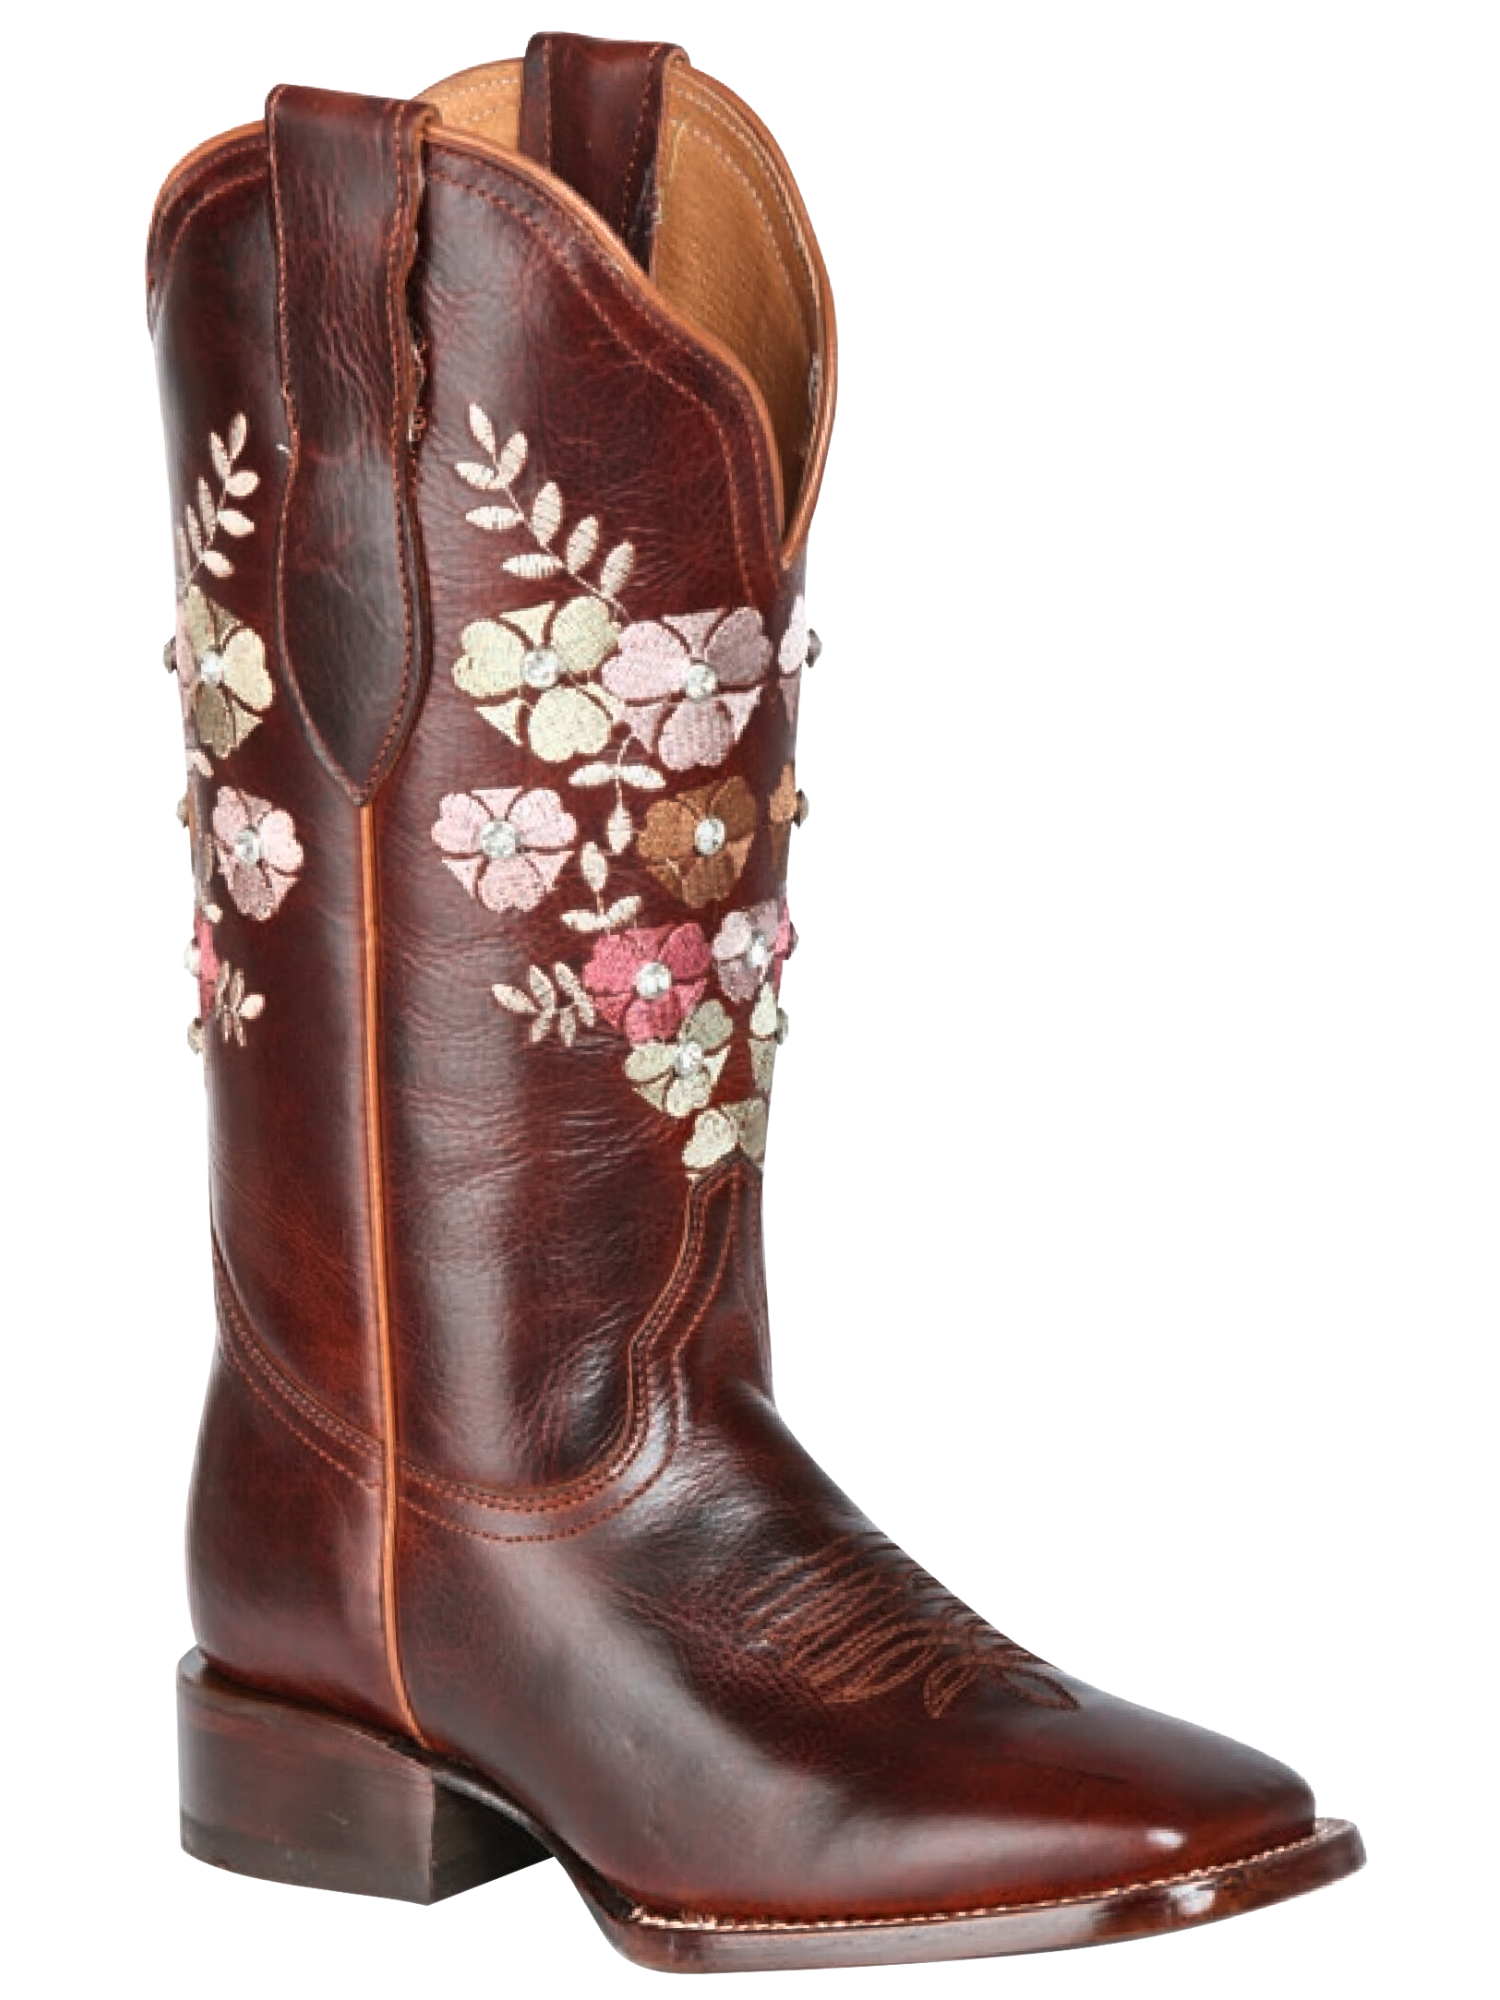 Botas Vaqueras Rodeo con Tubo Bordado de Flores de Piel Genuina para Mujer 'Jar Boots' - ID: 126449 Cowgirl Boots Jar Boots 